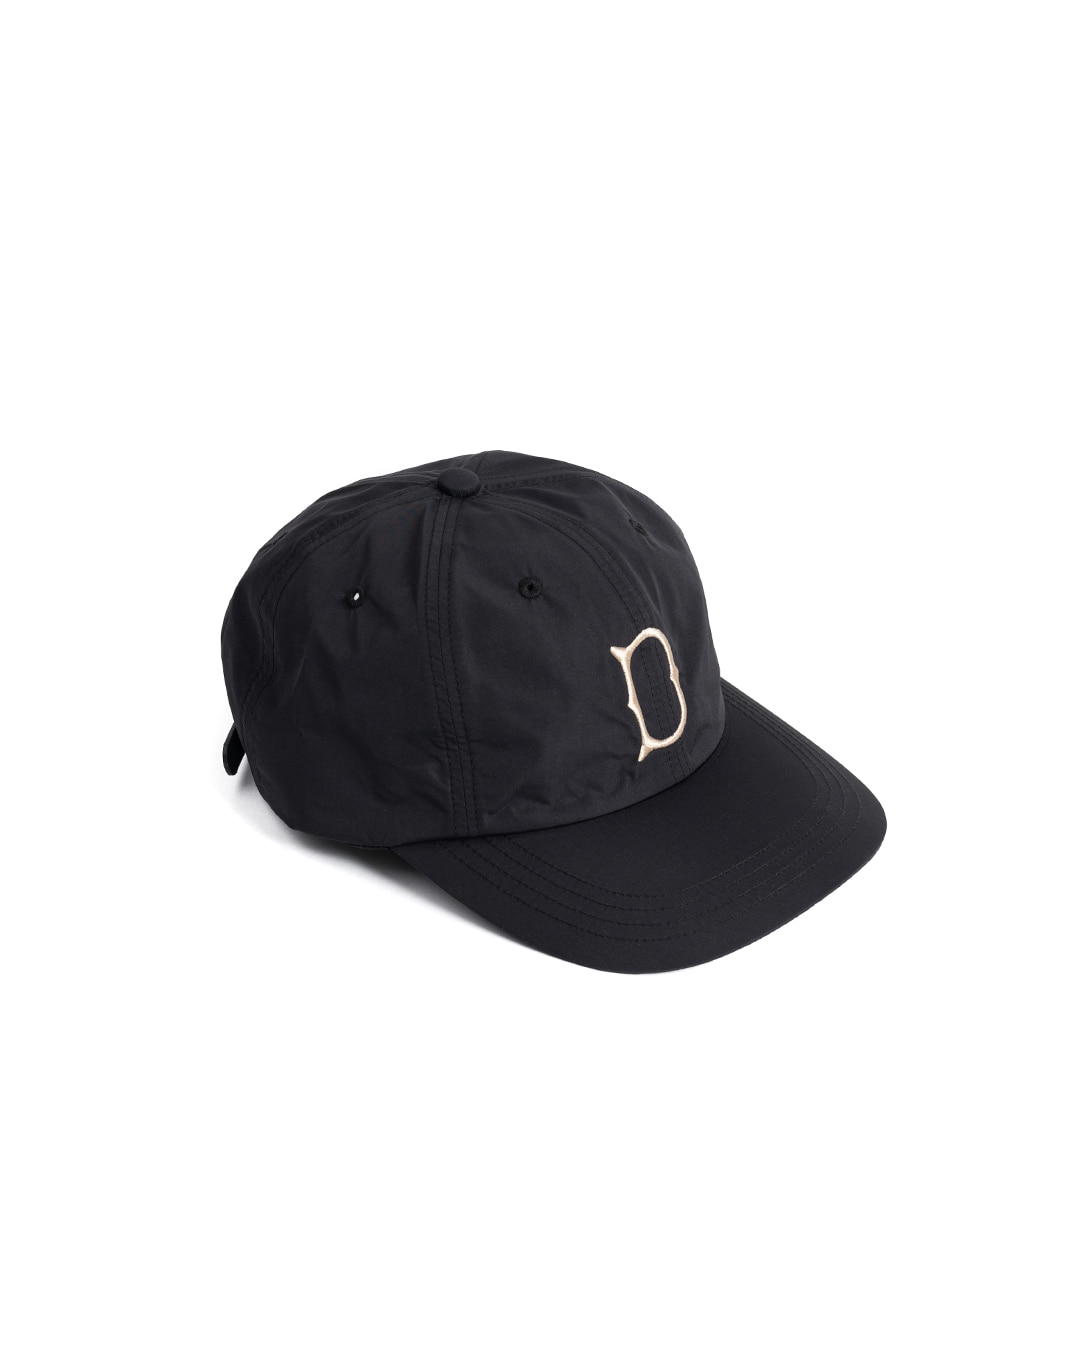 UNION CAP (black)